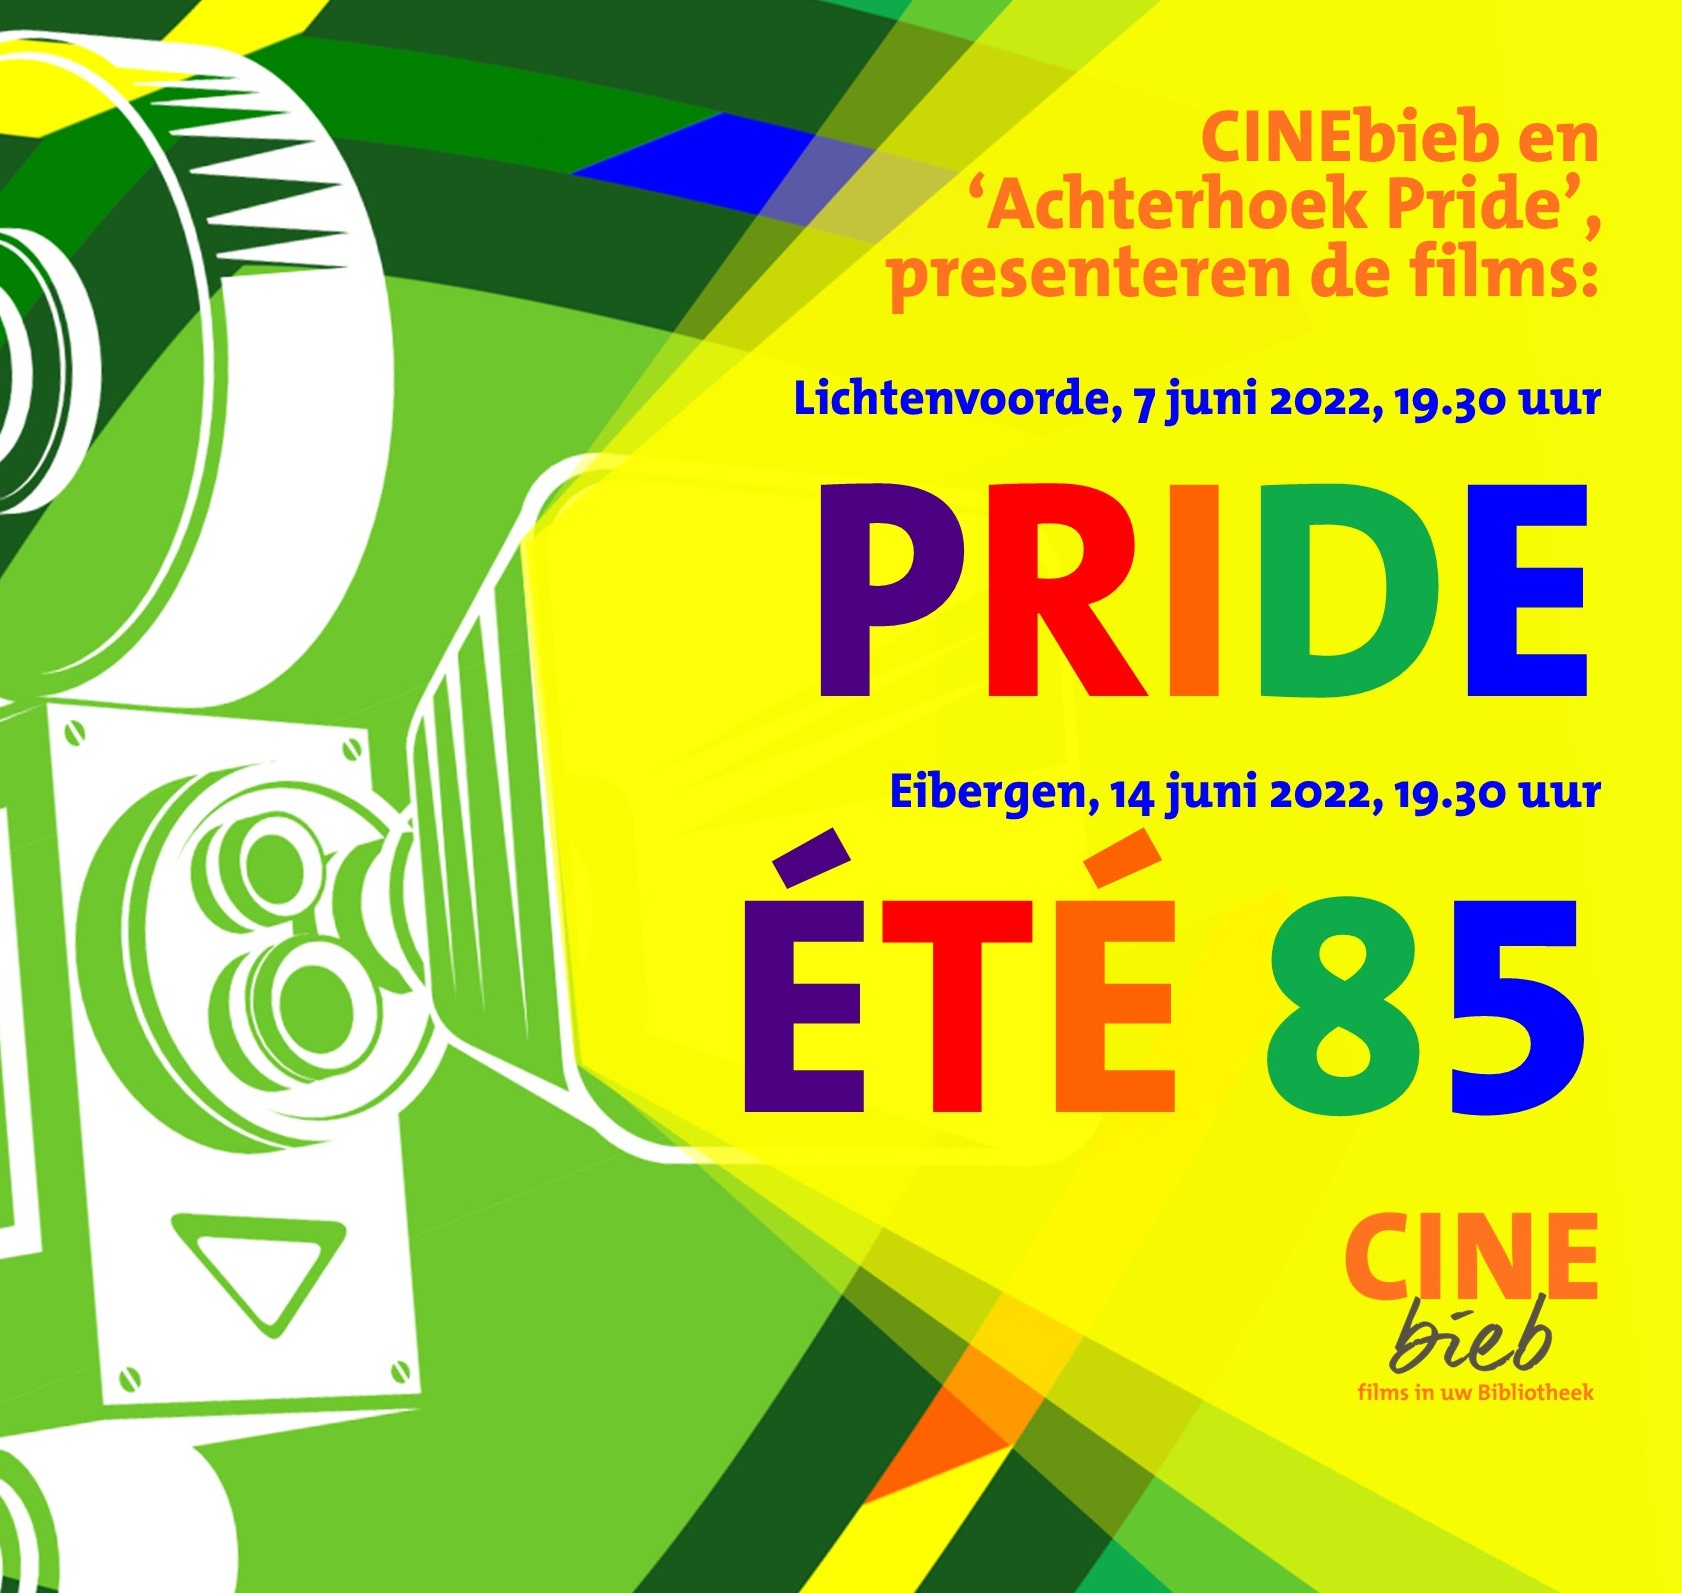 Film tijdens Achterhoek Pride maand; 